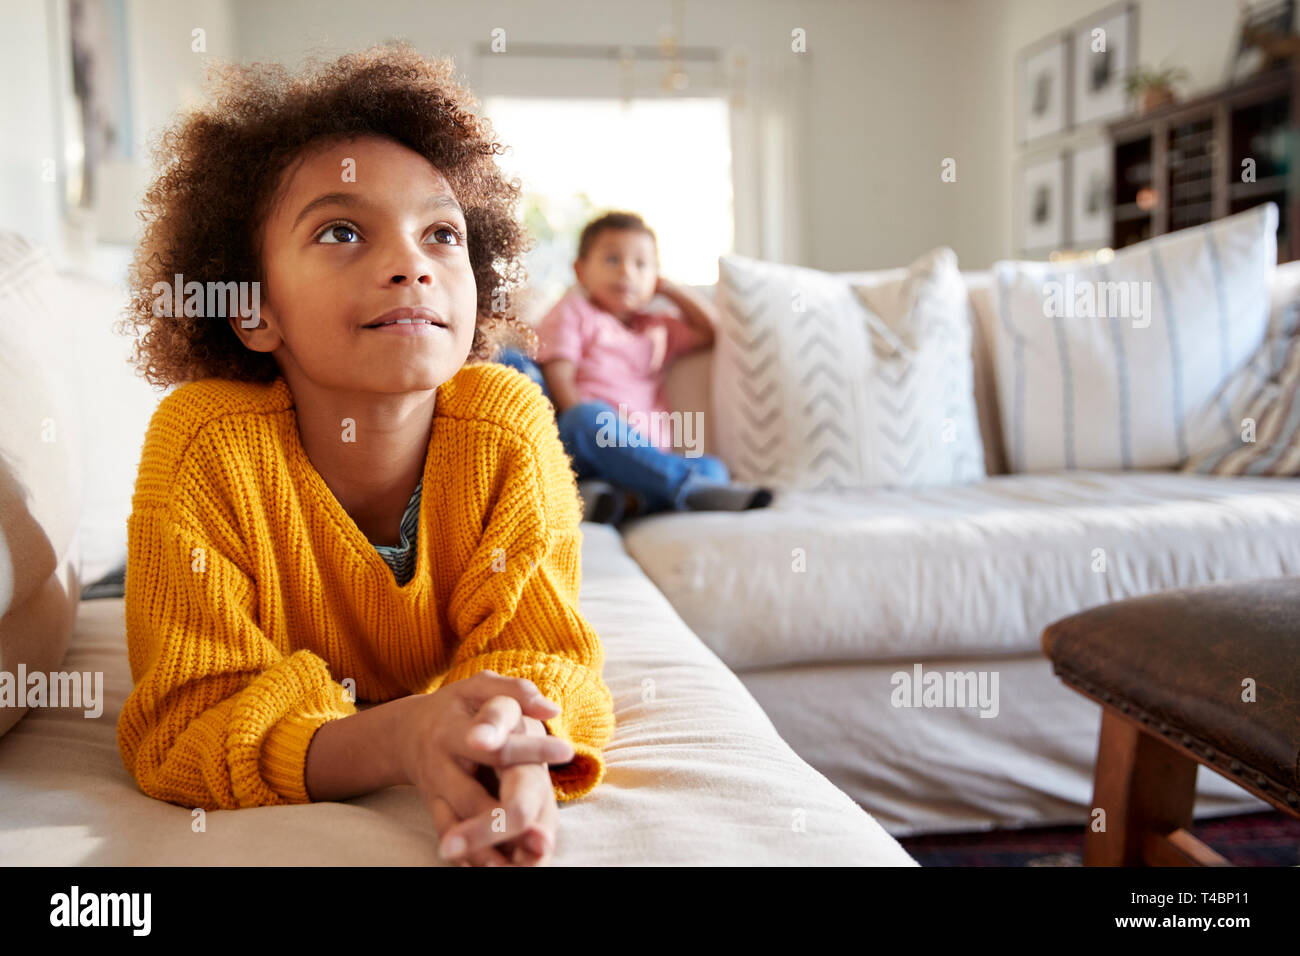 Cierre de pre-teen girl tumbado en el sofá viendo la TV en el salón, su hermano sentado en el fondo, se enfocan en primer plano Foto de stock